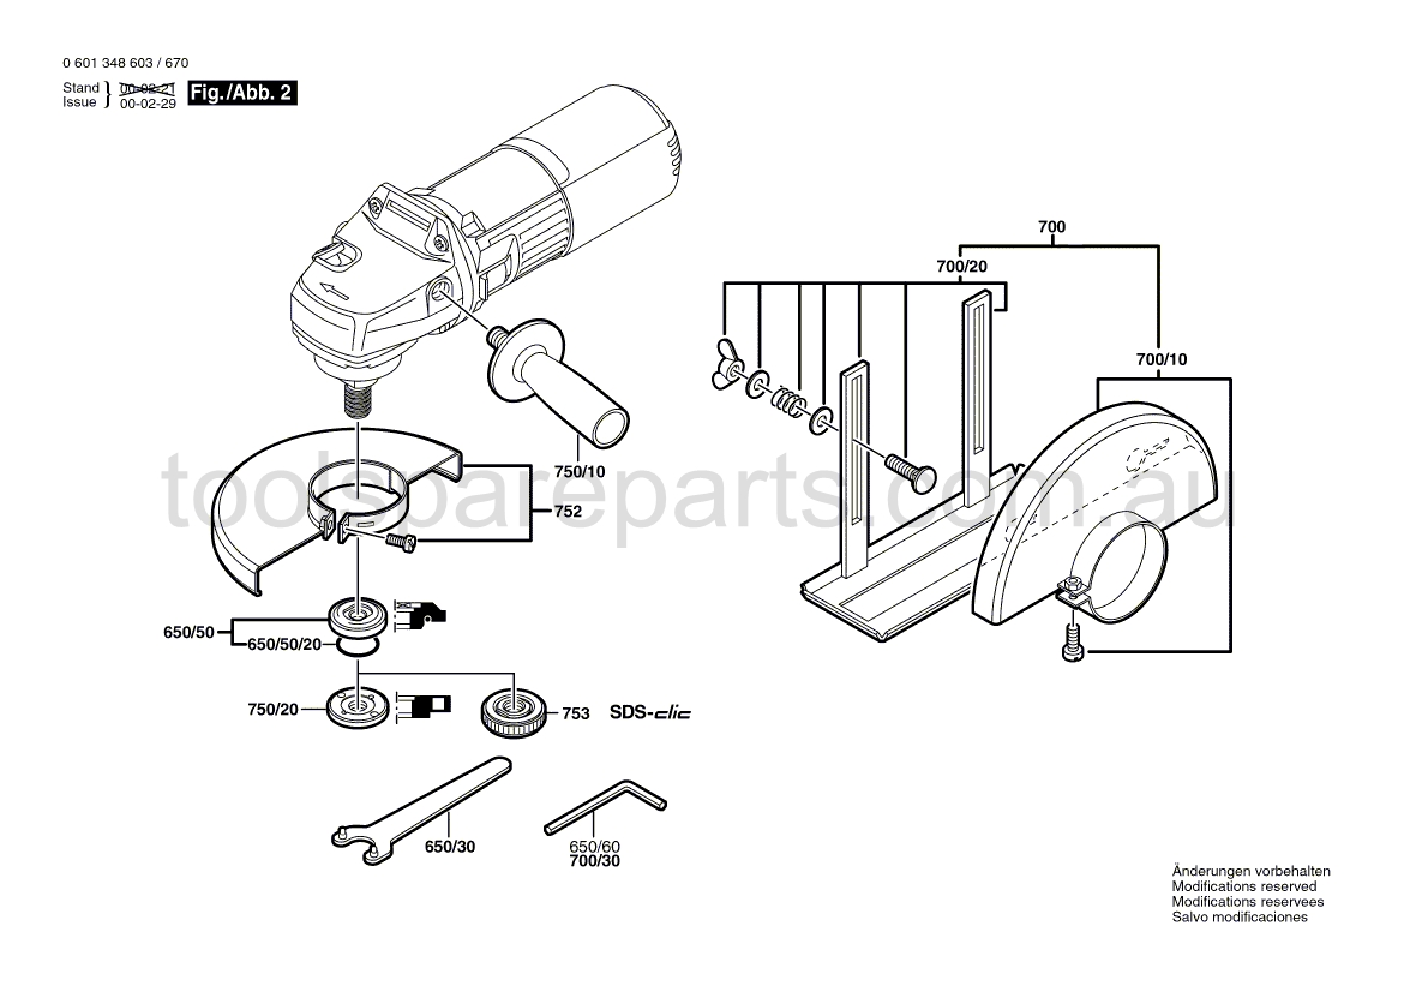 Bosch GWS 9-125 C 0601348637  Diagram 2